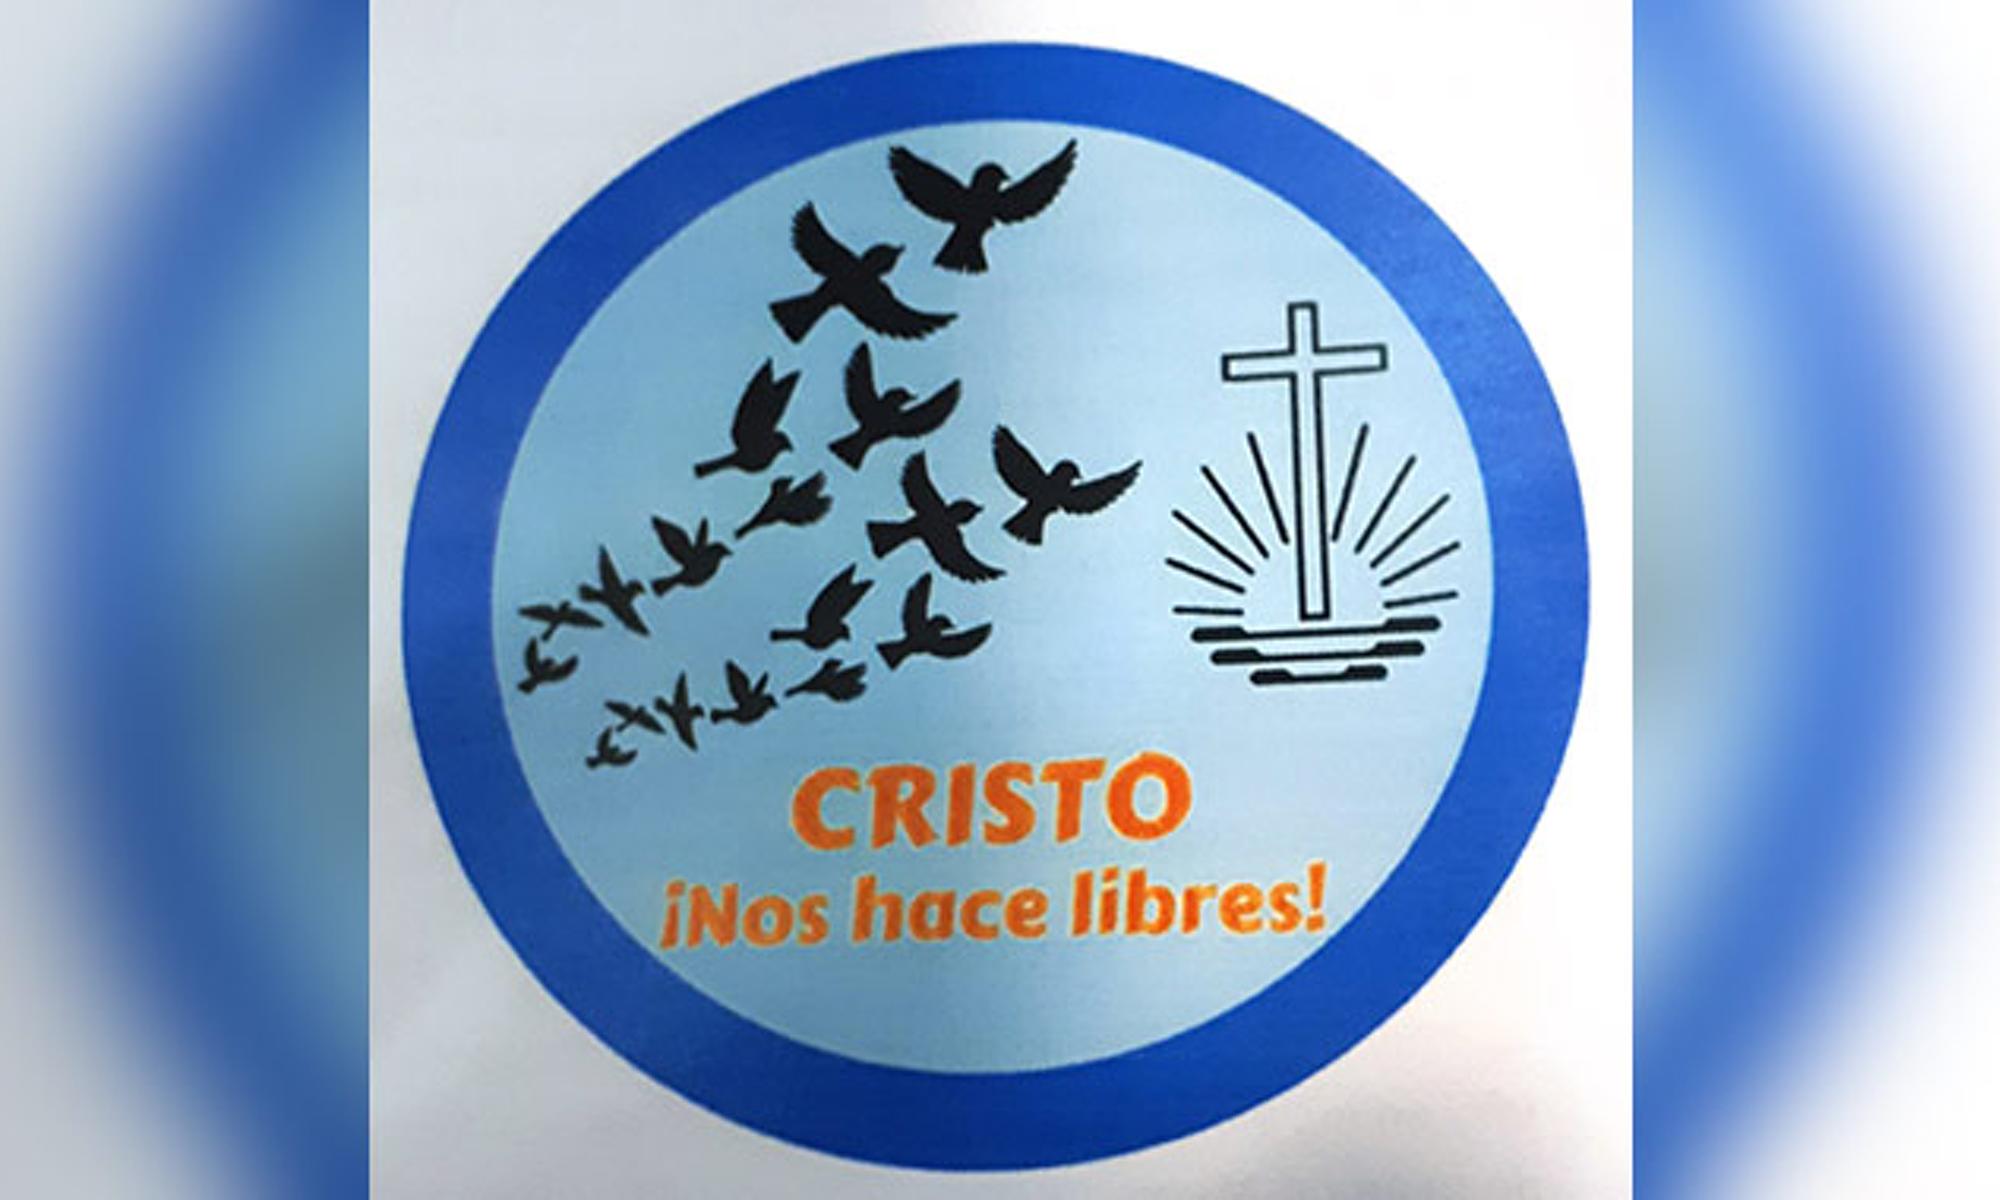 Gestaltetes Logo zum weltweiten Jahresmotto "Christus macht frei"